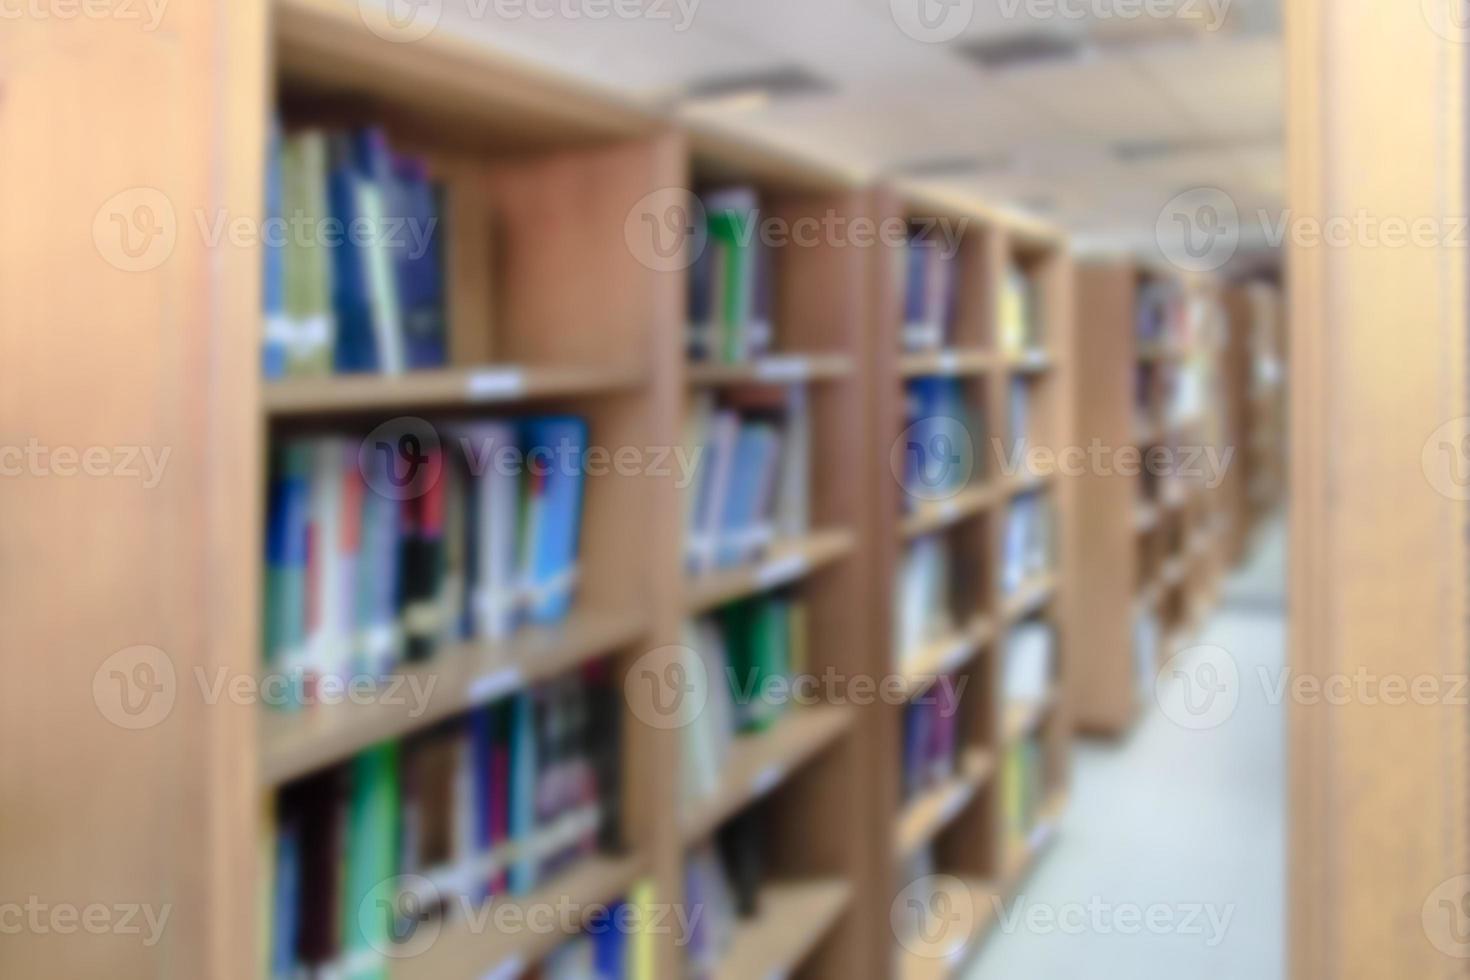 Regal mit Büchern in der Bibliothek unscharfer Hintergrund foto